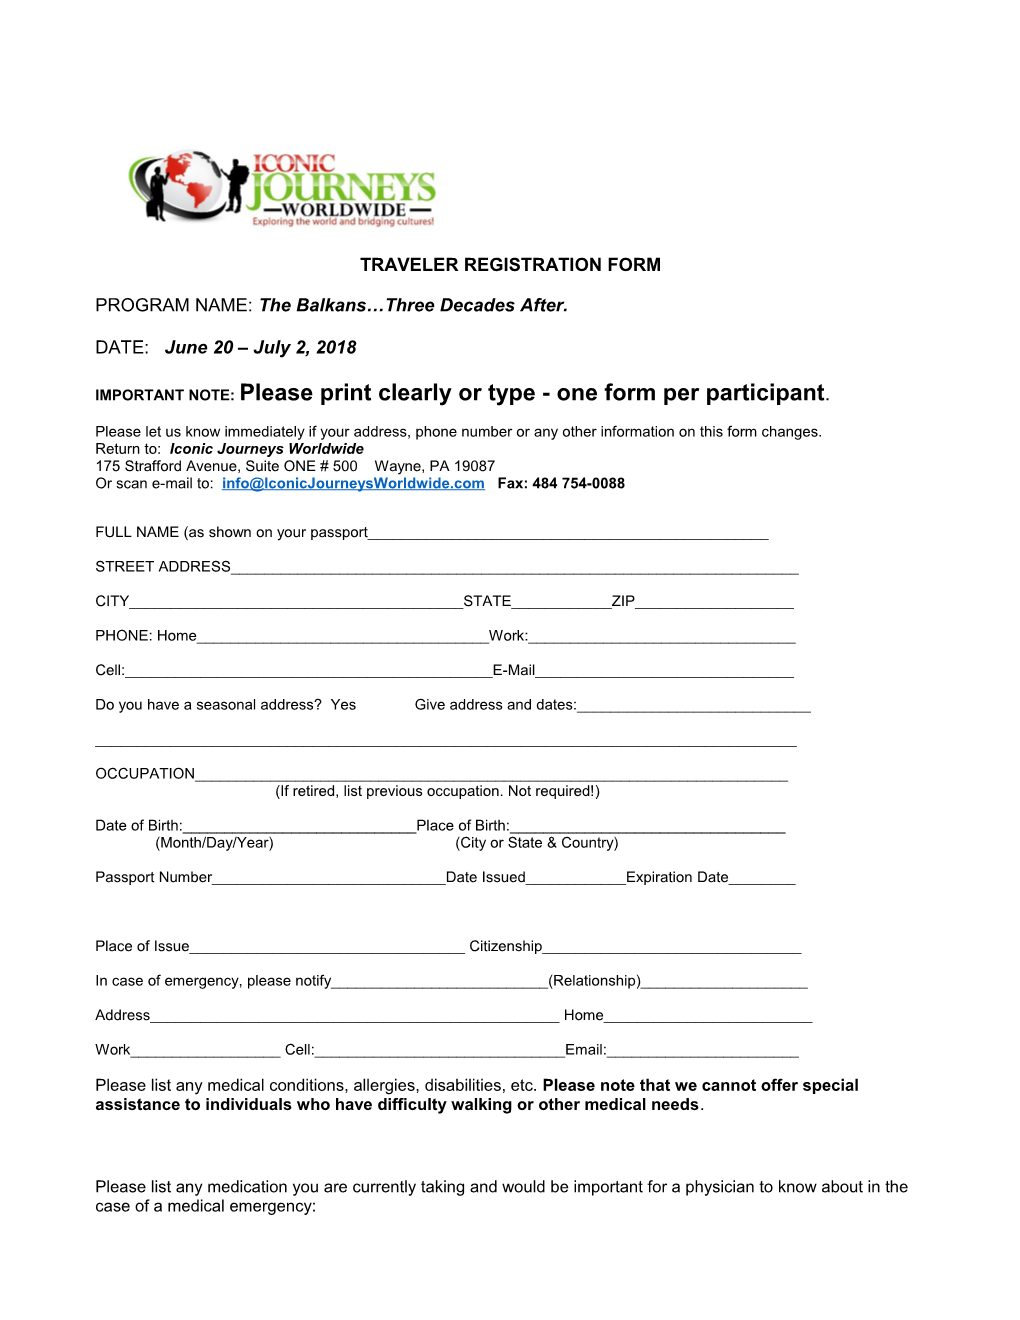 Traveler Registration Form